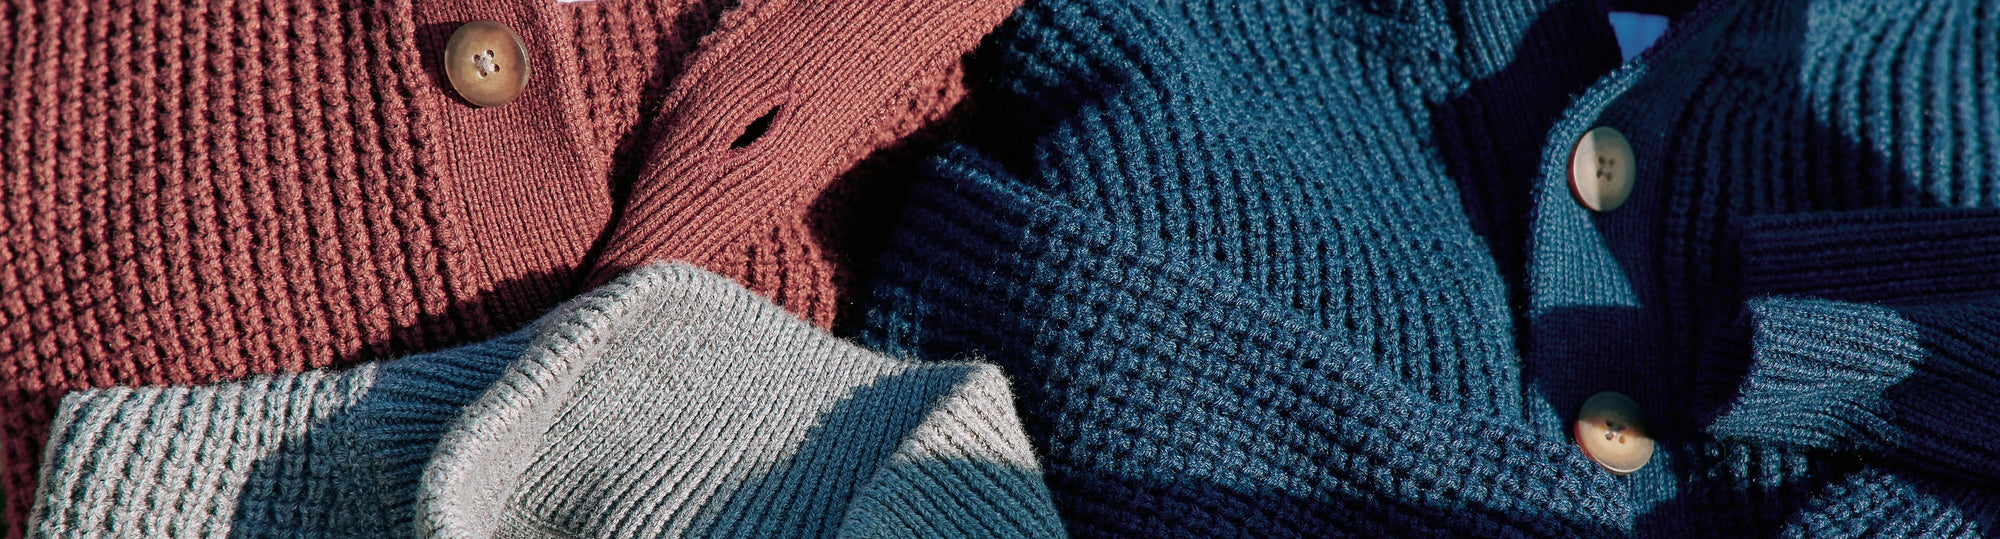 Men's nice knit sweaters